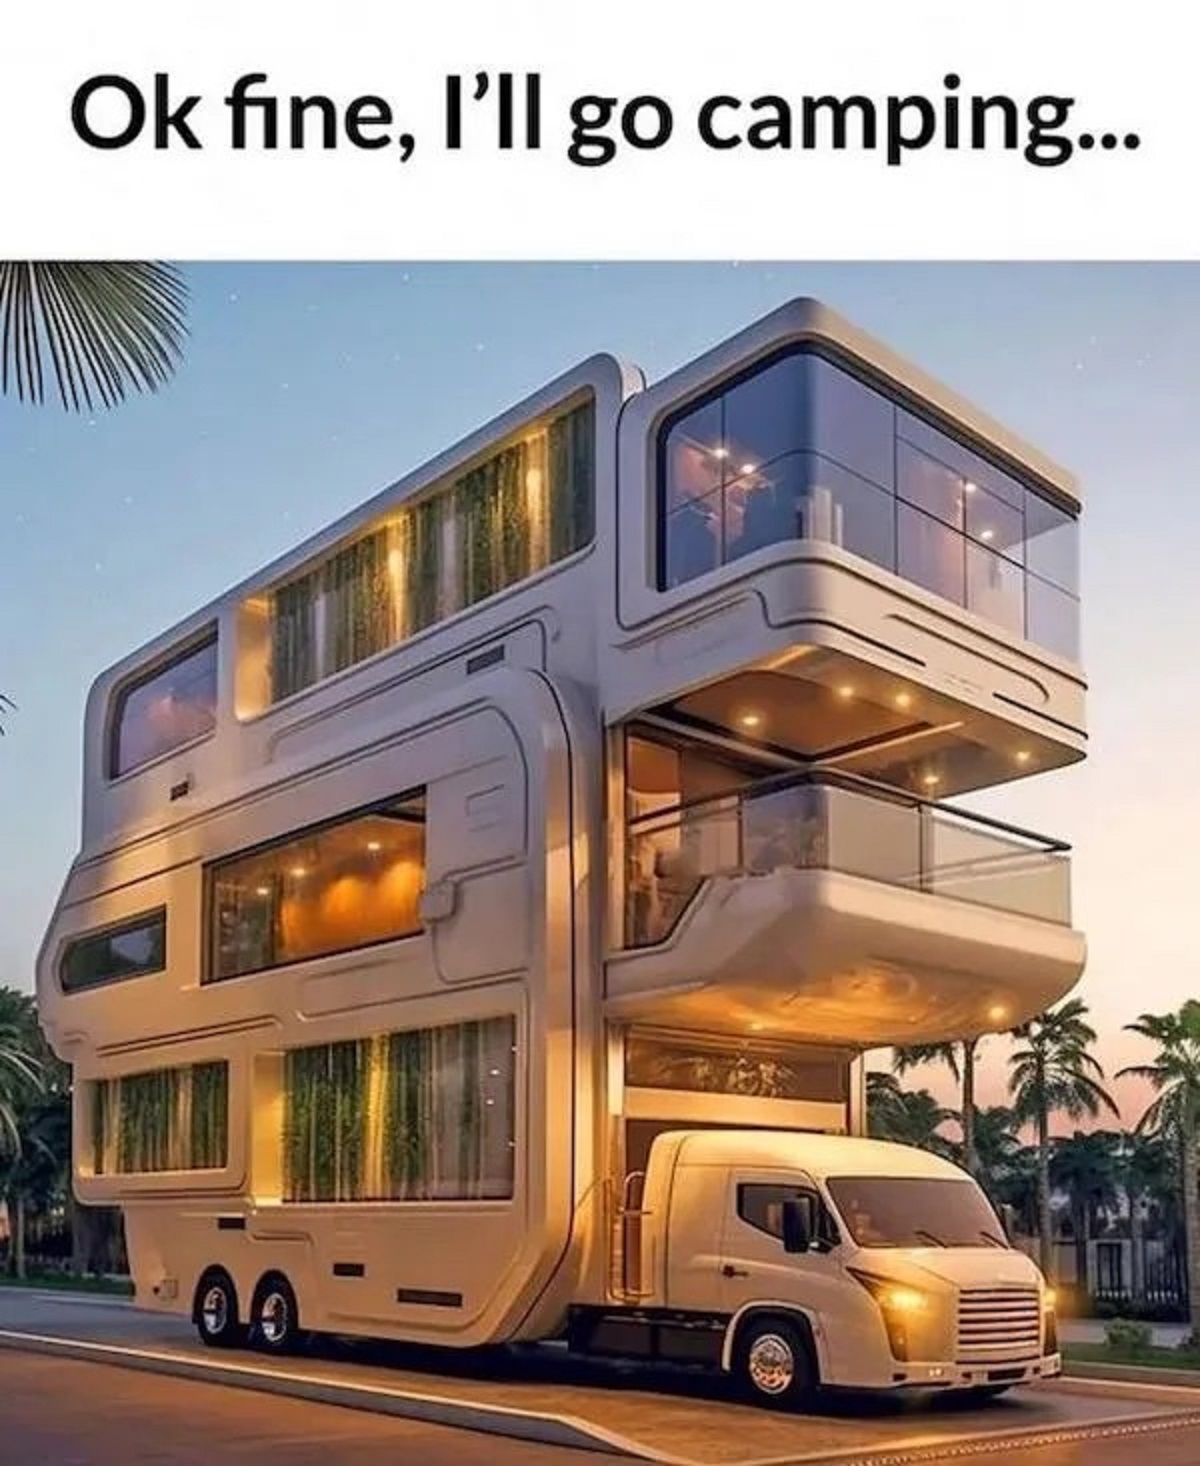 triple decker bus - Ok fine, I'll go camping...